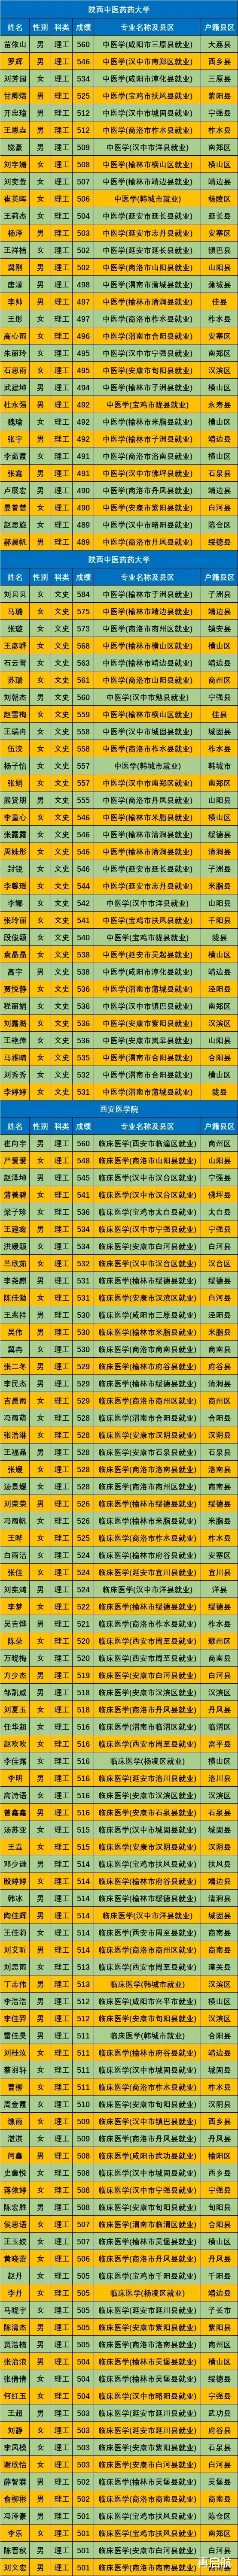 重磅, 速看! 陕西省, 2021年免费医学定向生, 录取名单最新汇总!